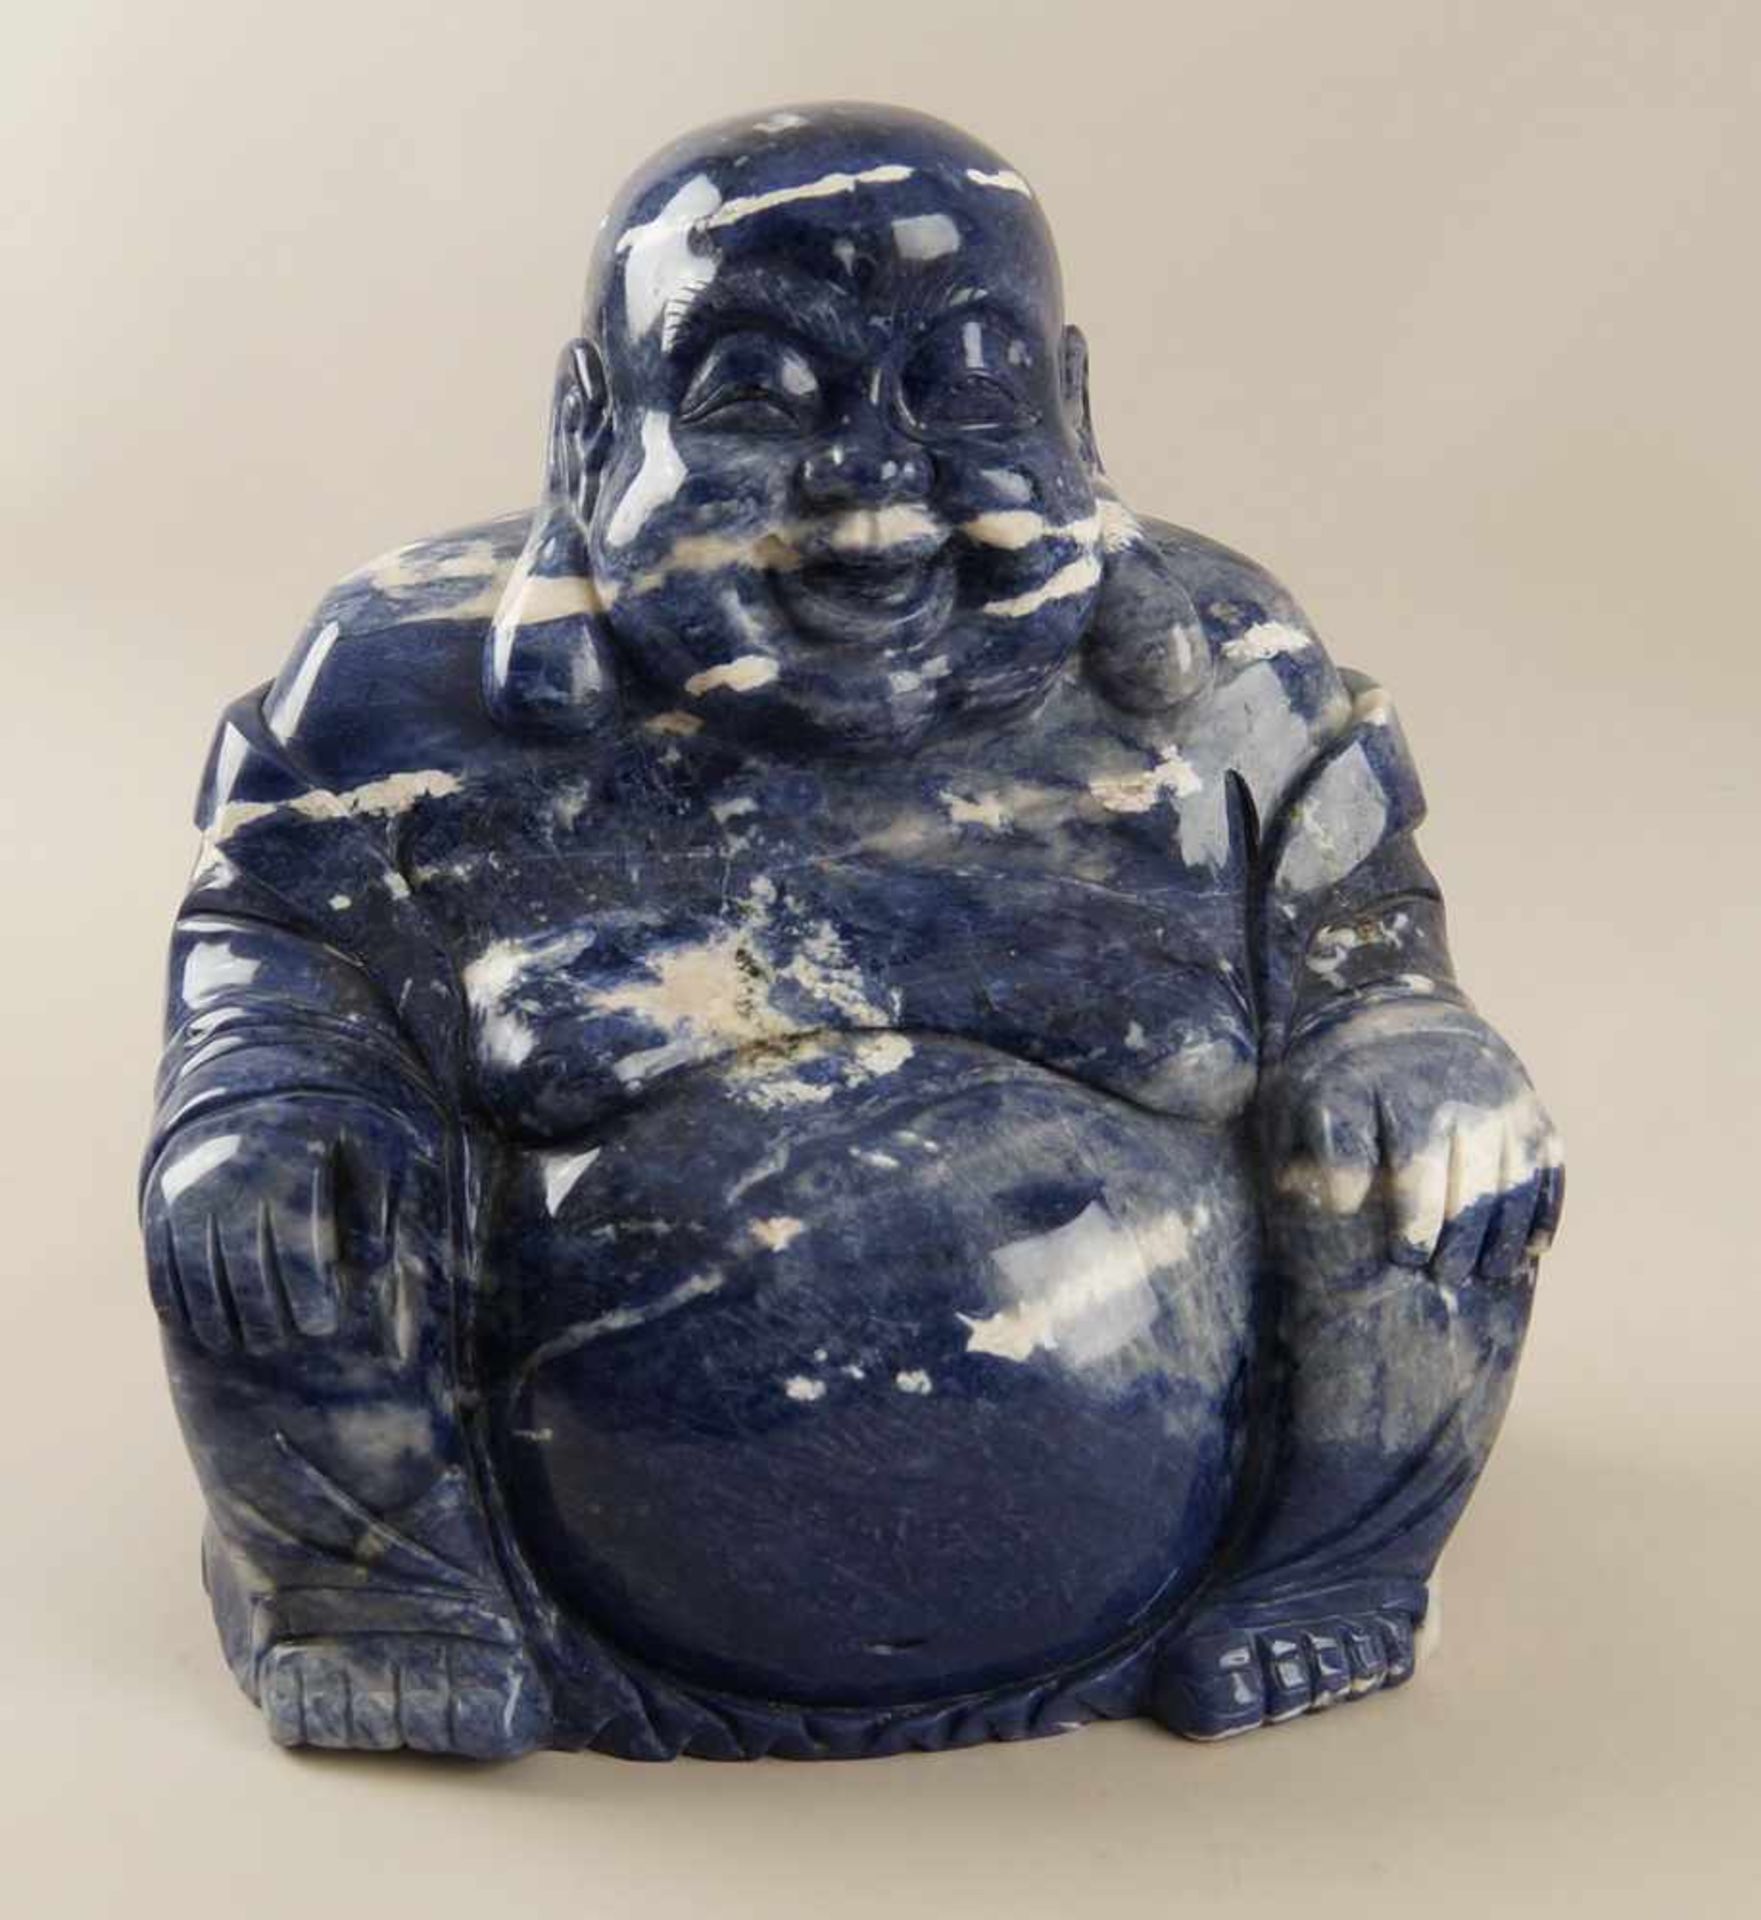 Sitzender Buddha aus Onyx, H 30 cm- - -24.00 % buyer's premium on the hammer price19.00 % VAT on